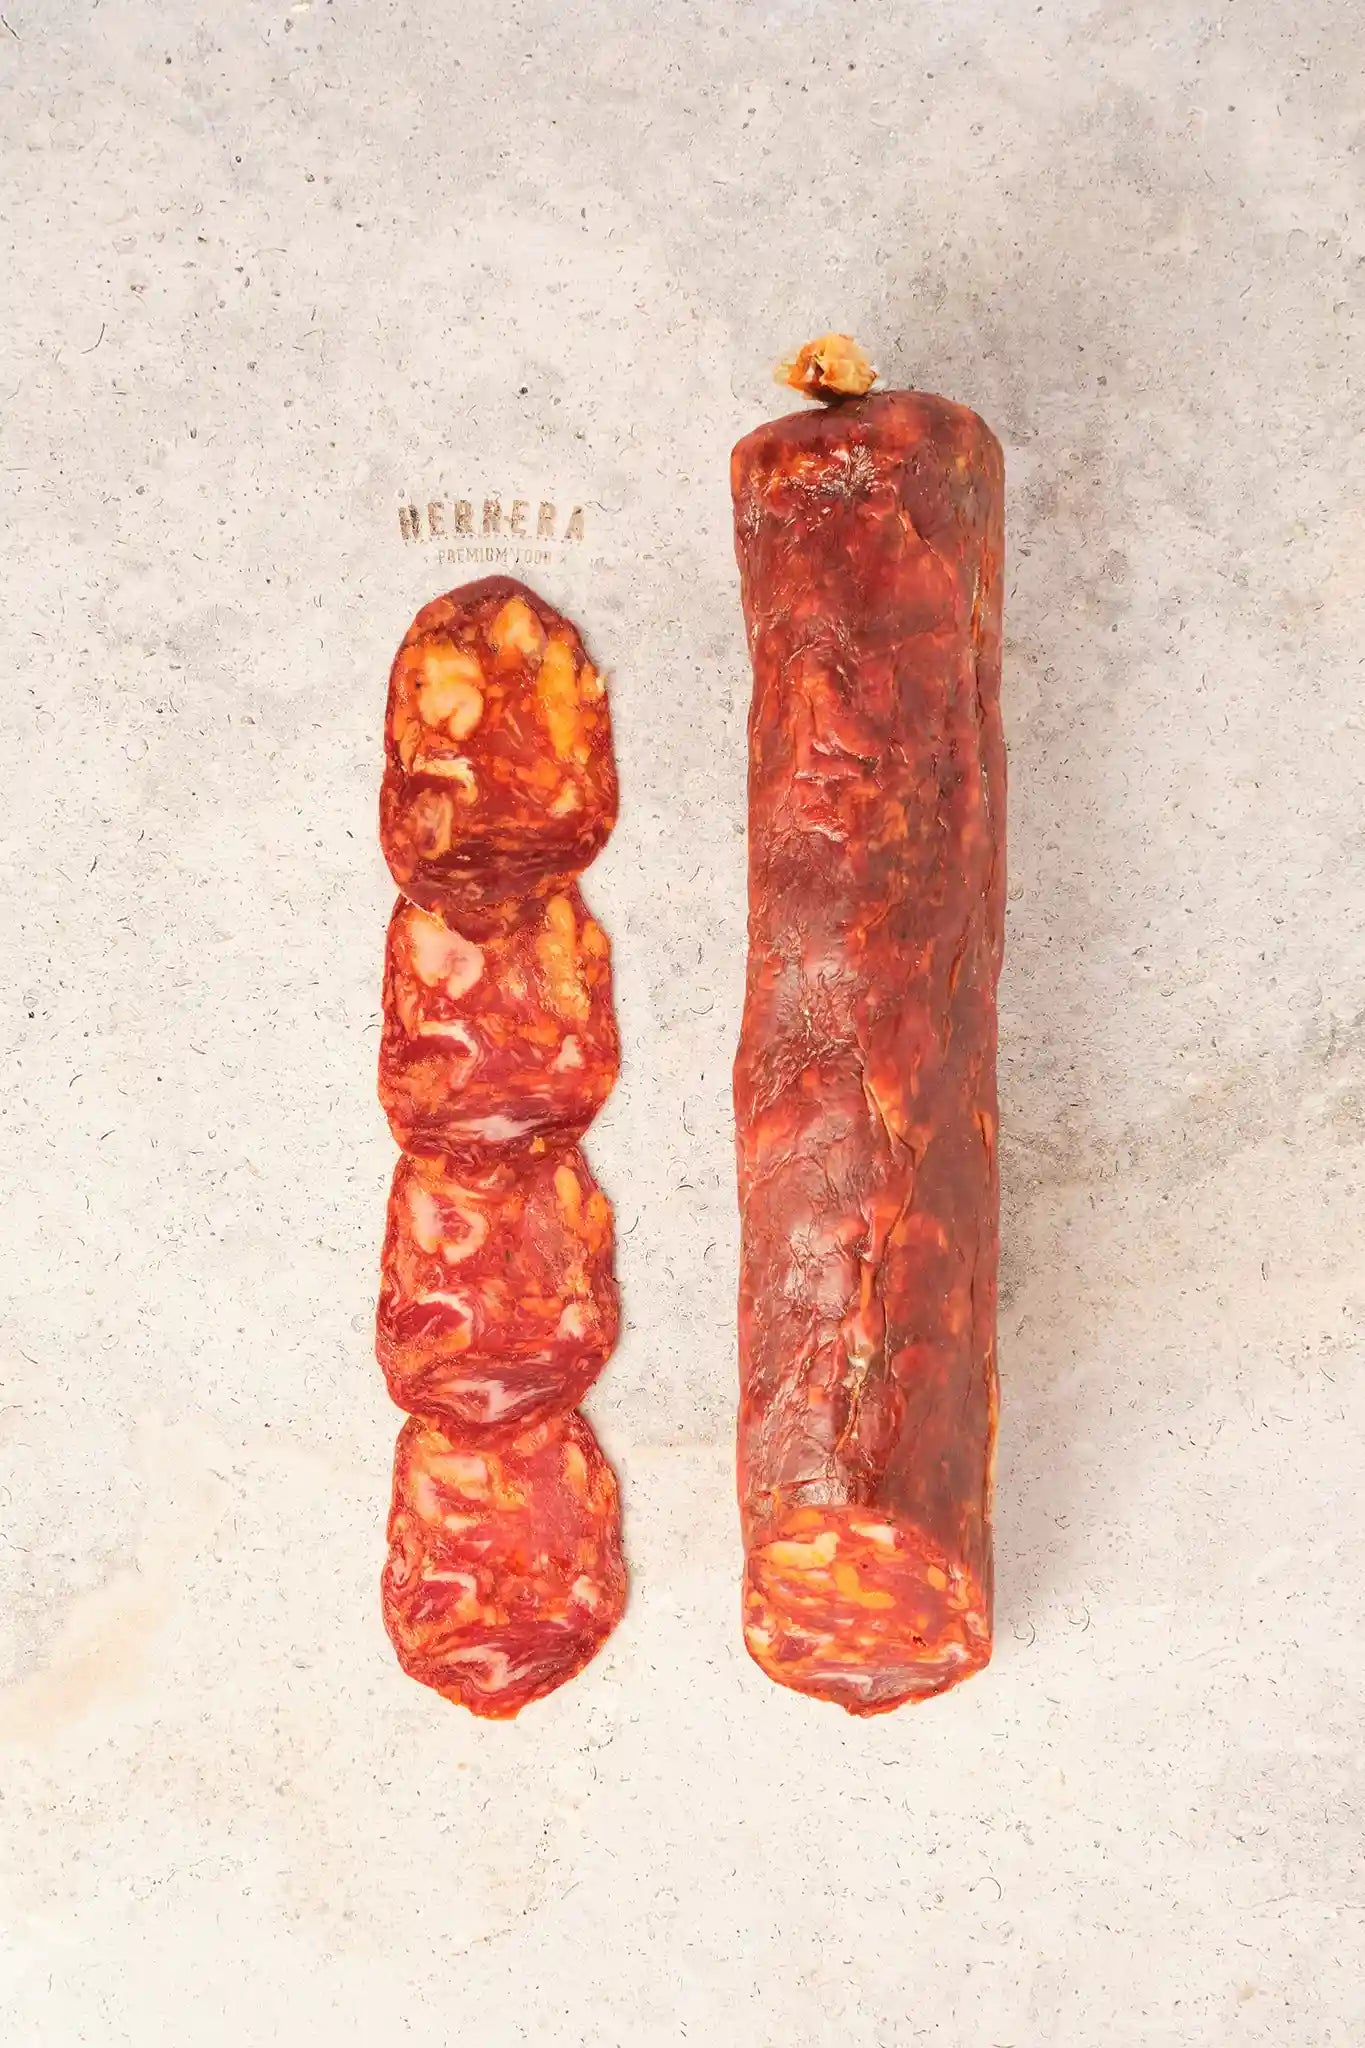 La excelencia del Chorizo Ibérico en tu mesa